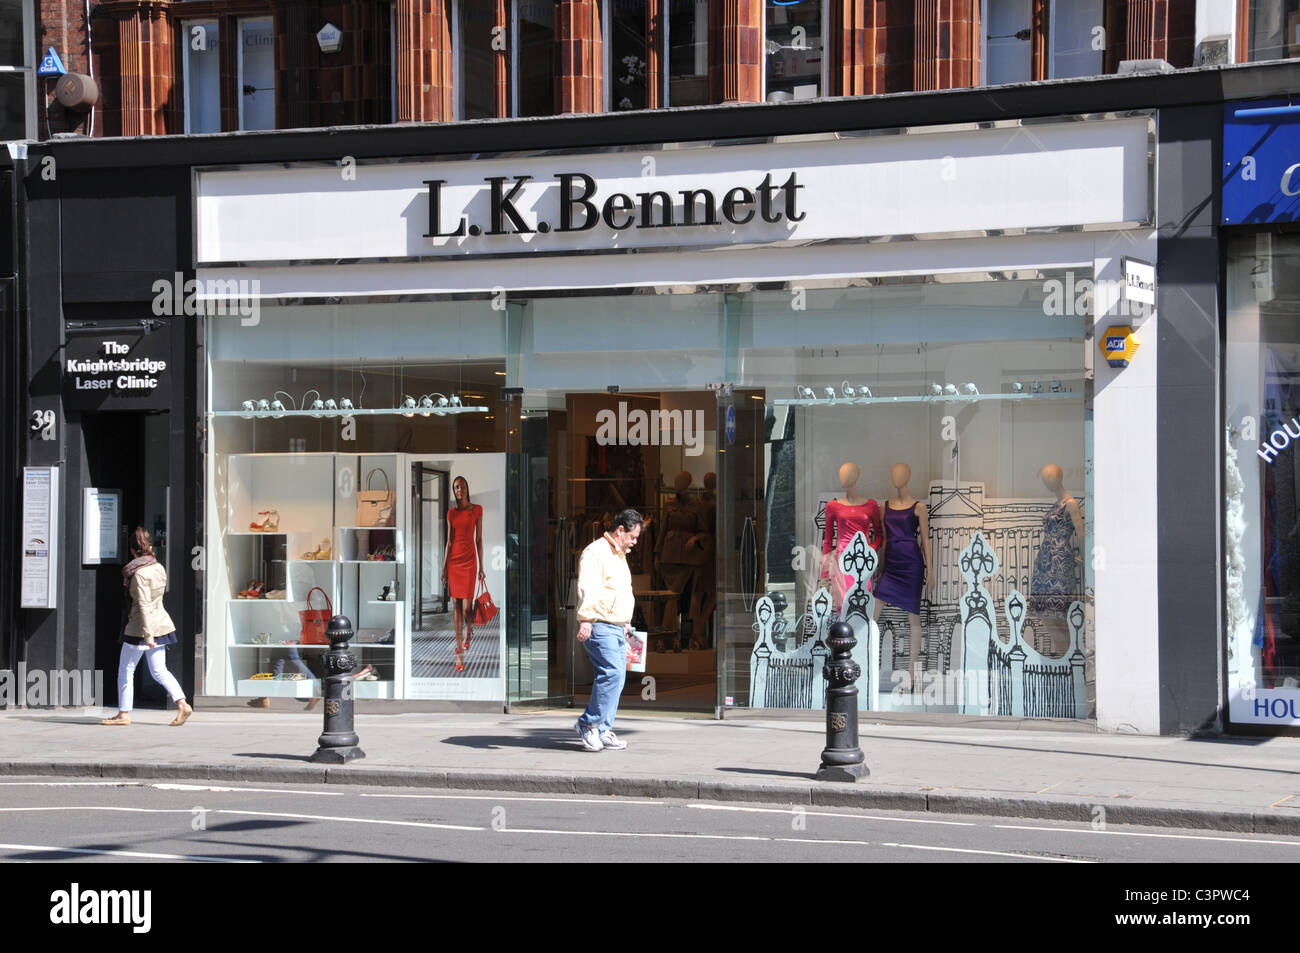 LK Bennett Londres womenswear tienda de estilo de moda ropa ropa estilo chic caros vestidos zapatos bolsos accesorios Foto de stock